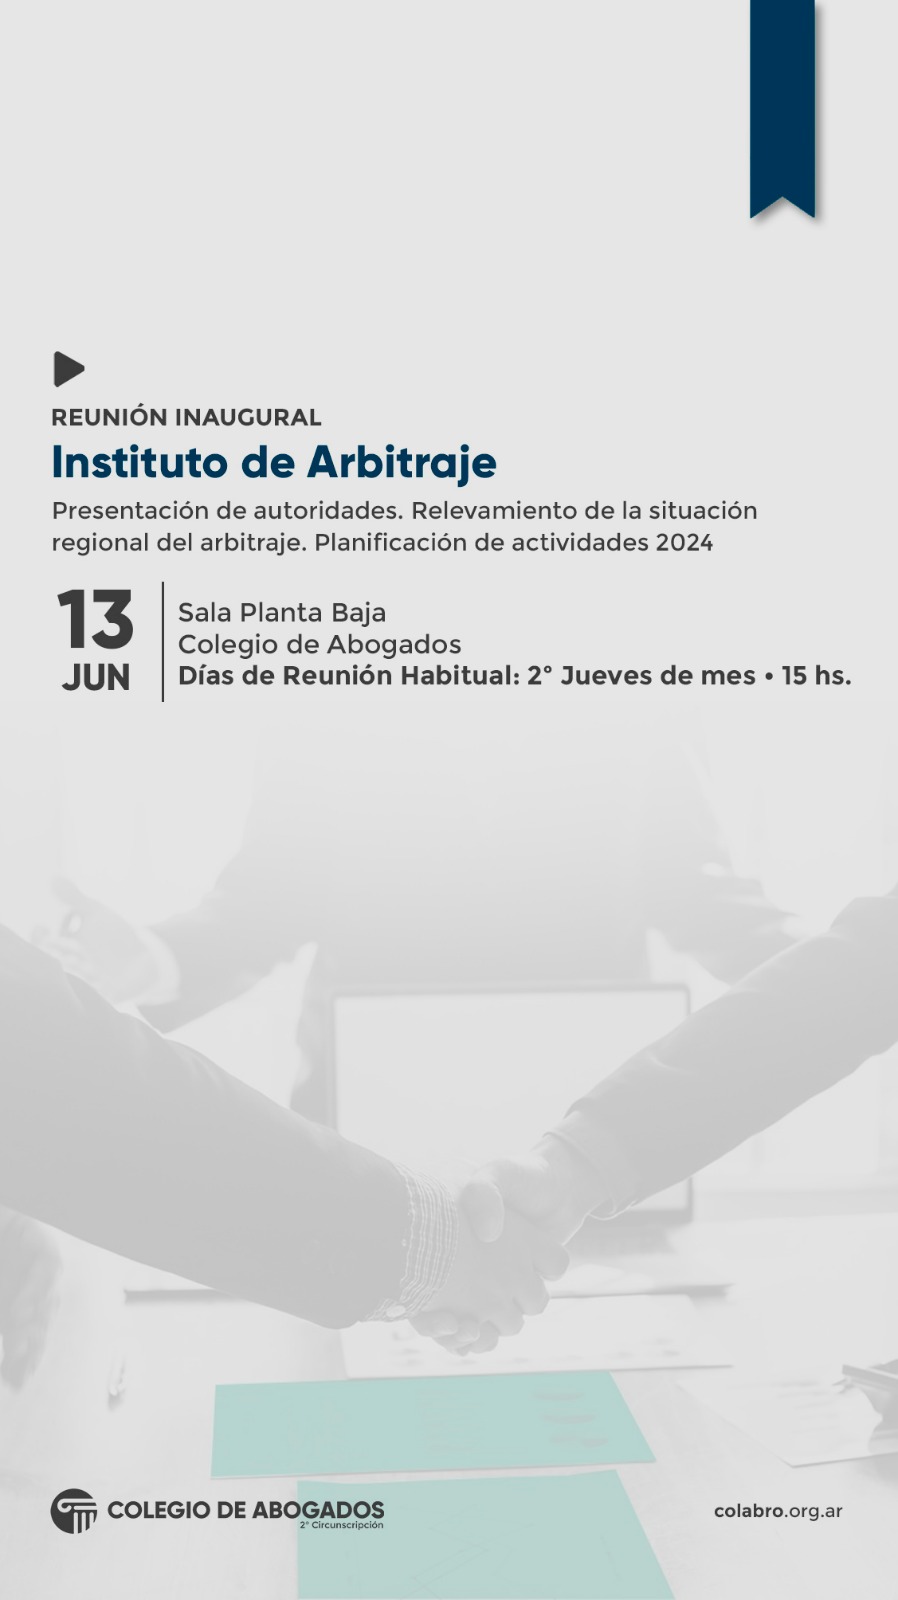 REUNIÓN INAUGURAL DEL INSTITUTO DE ARBITRAJE - 13/06/2024